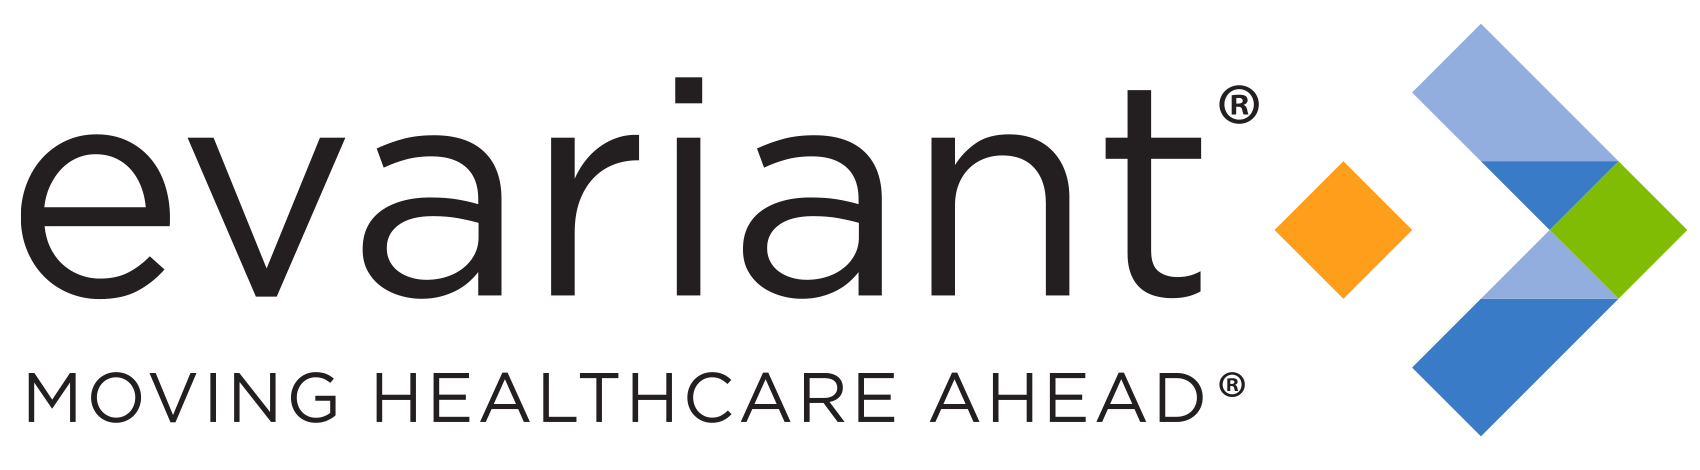 Evariant, Inc Company Logo